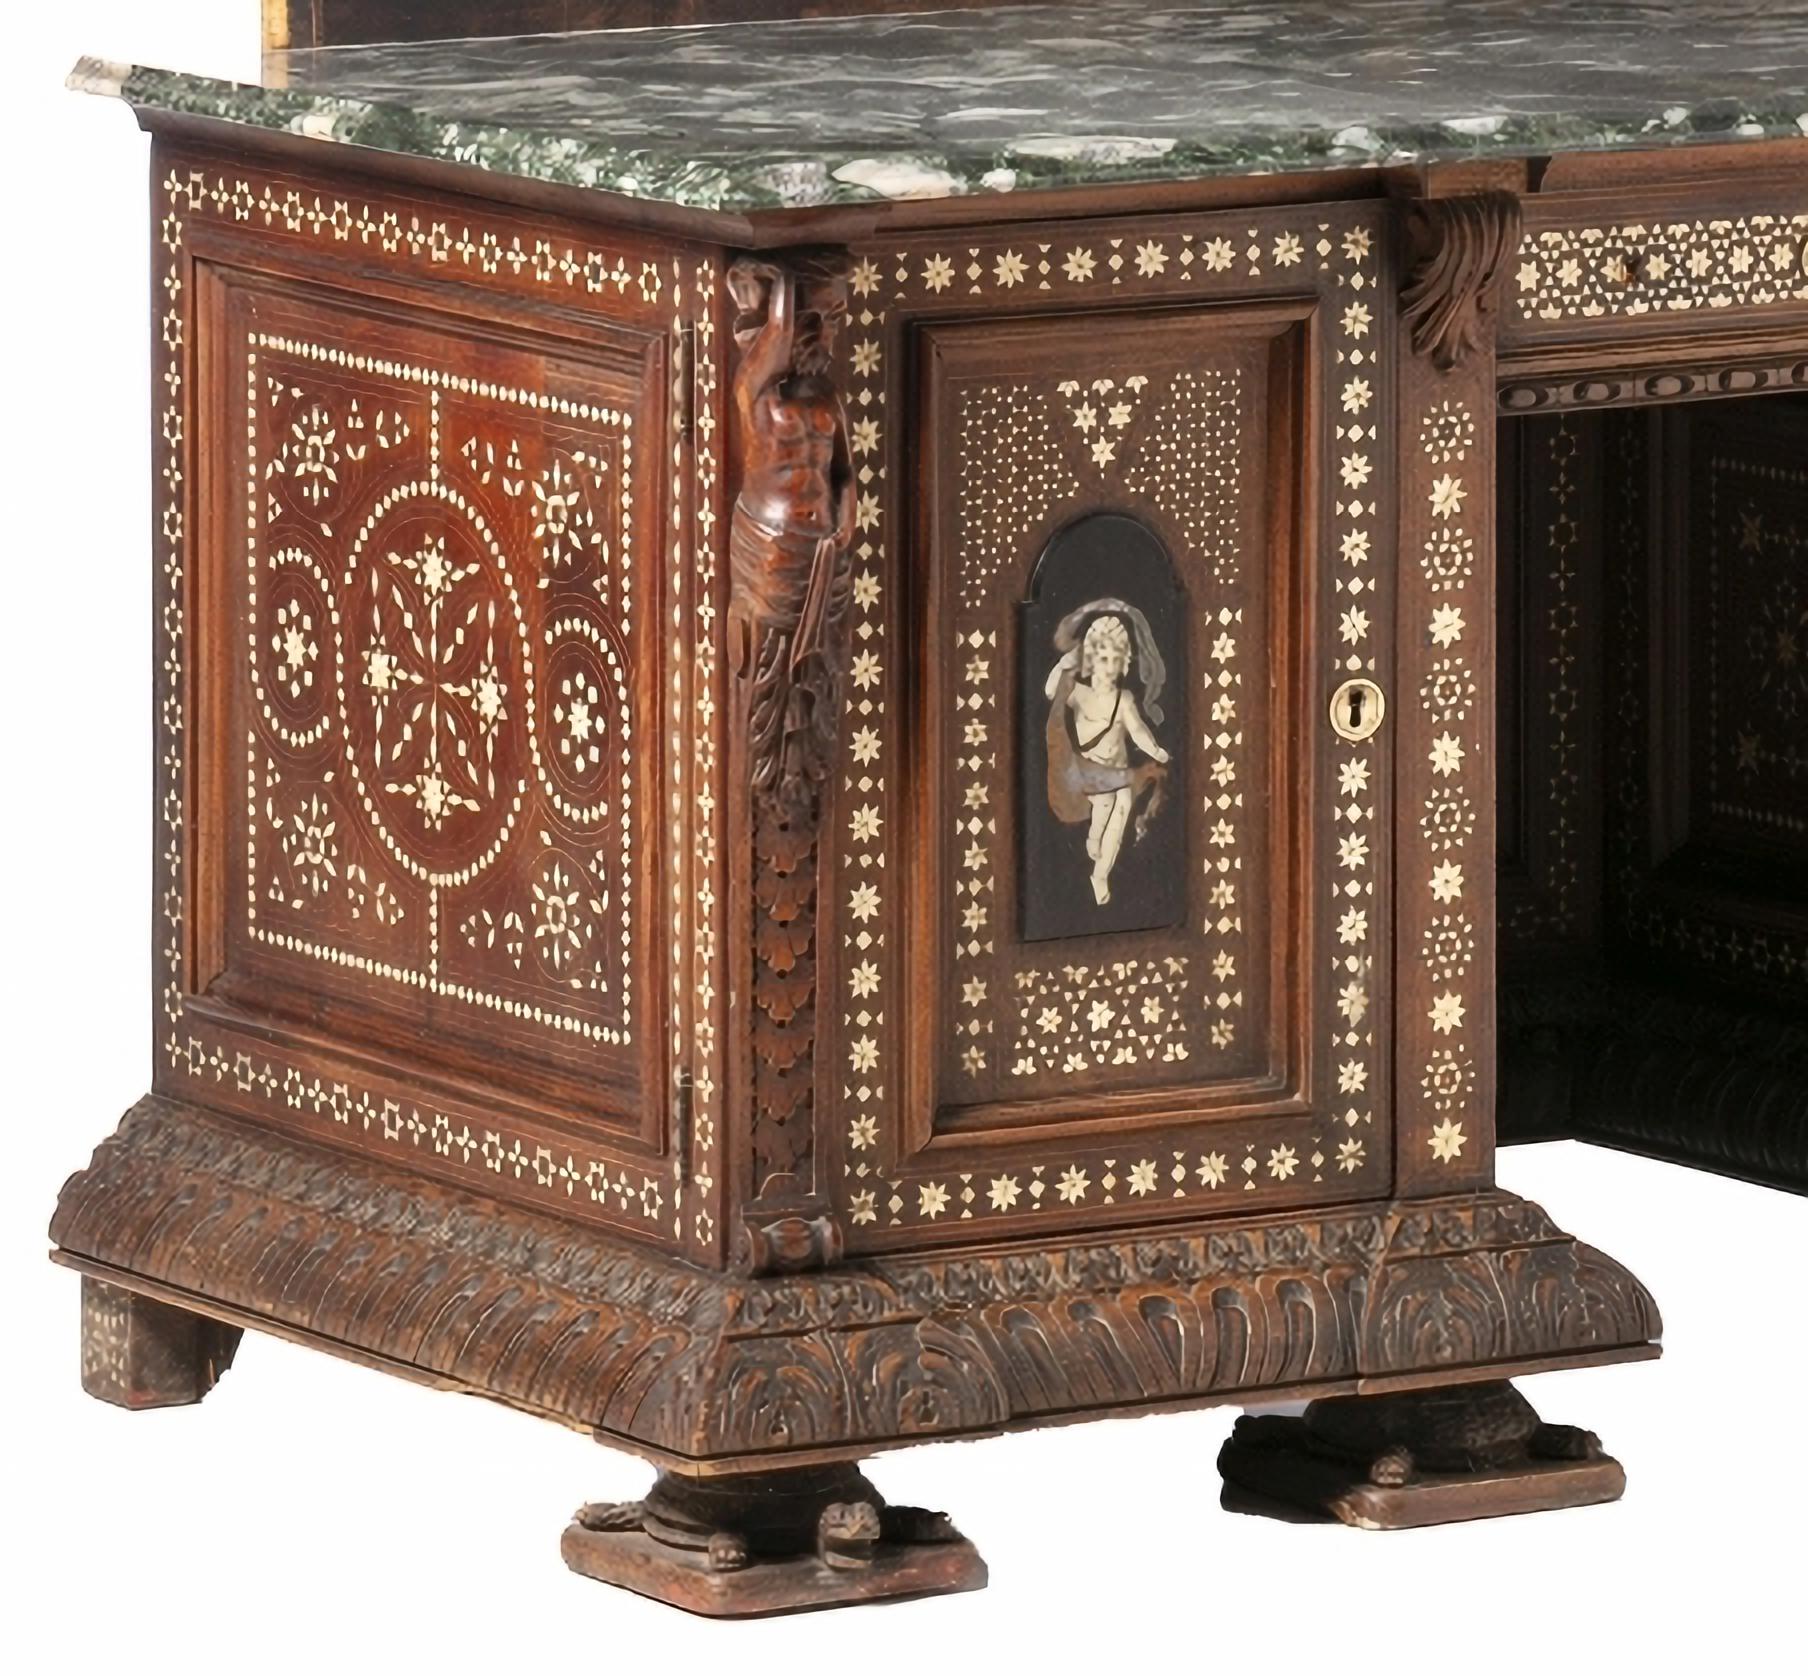 SELTENE UND SPECTACULARe italienische DRESSING-Möbel des 19. Jahrhunderts

Italienisch
aus Nussbaumholz mit Schnitzereien, eingelegten Filets, gravierten und harten Steinen.
Kompositionen mit 